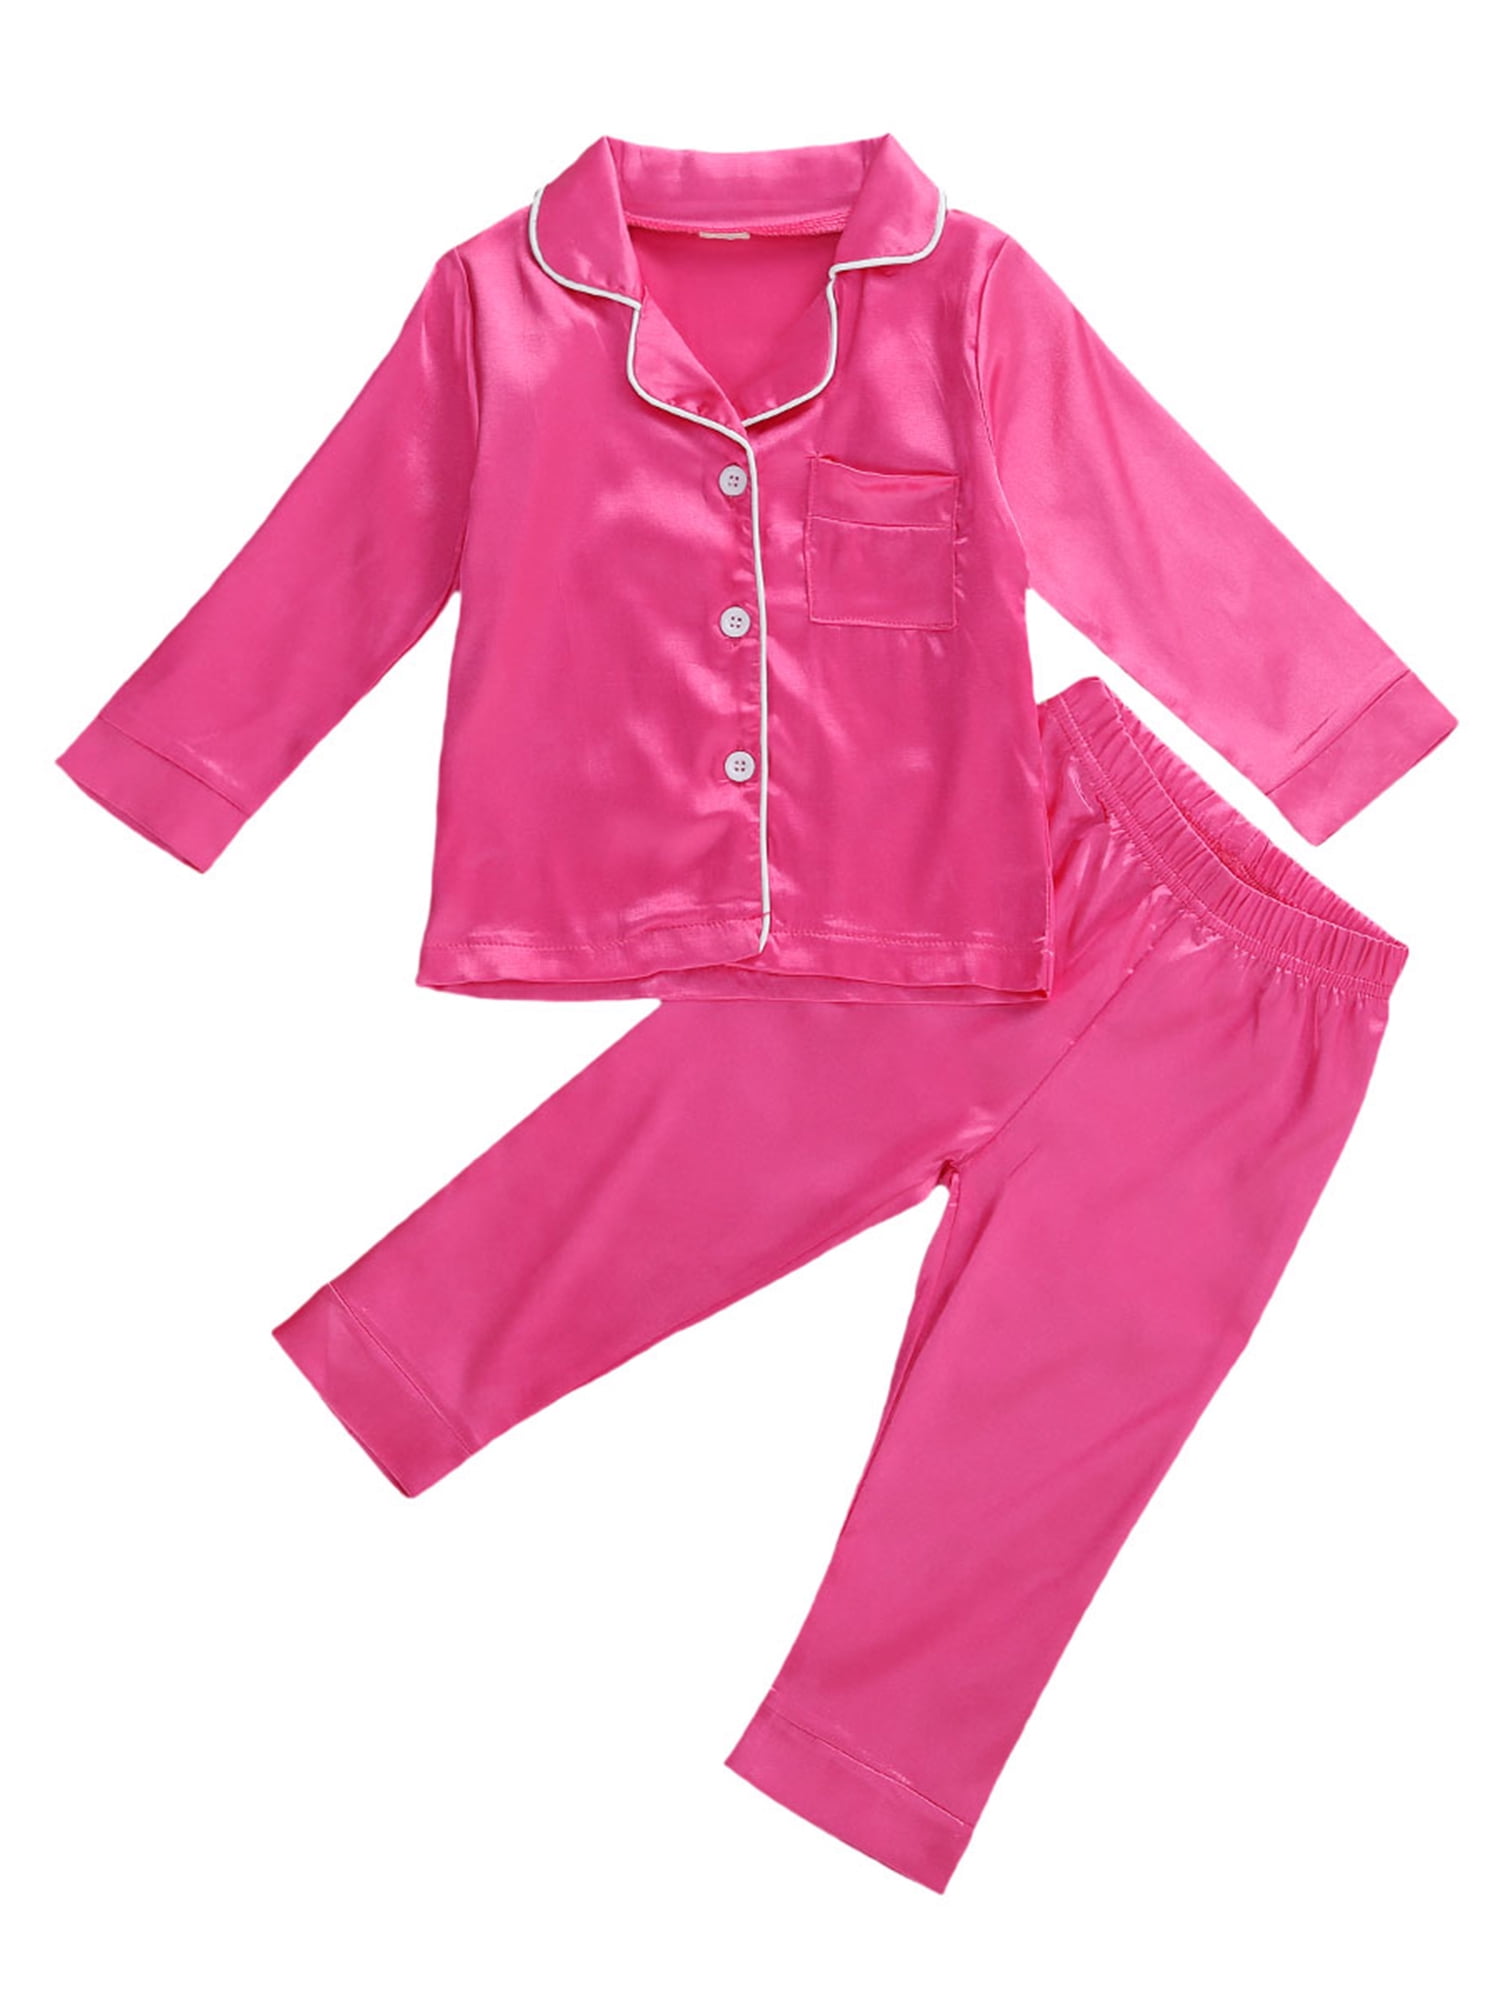 Toddler Baby Kids Girls Satin Pajamas Set Long Sleeve Button-Down Sleepwear PJs 